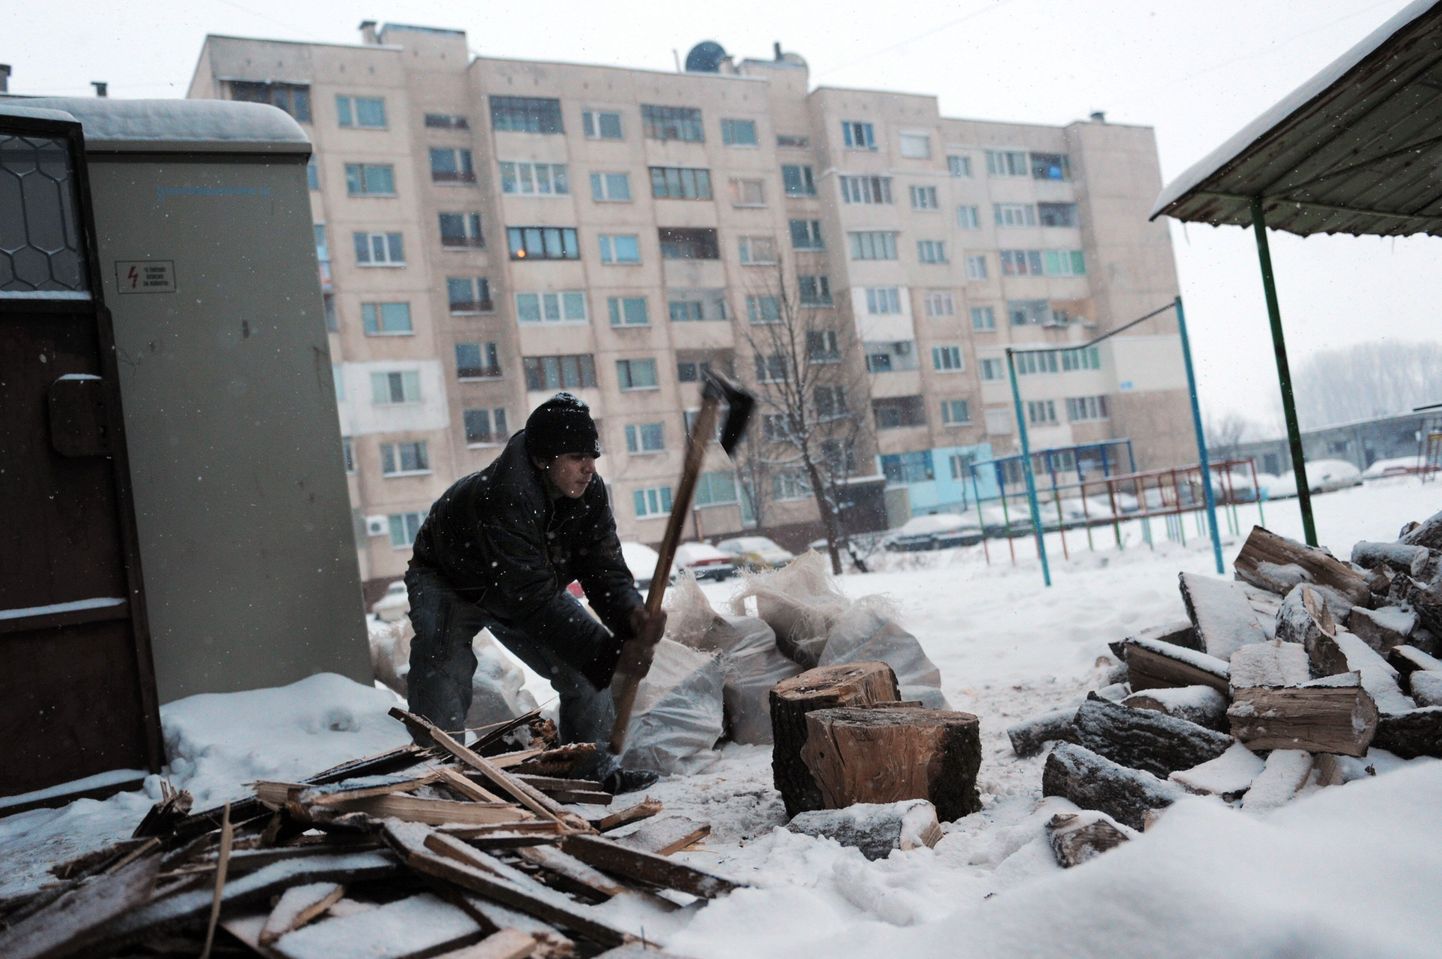 Vene gaasist ilma jäänud bulgaarlased püüdsid jaanuaris sooja saada ahjukütte abil.